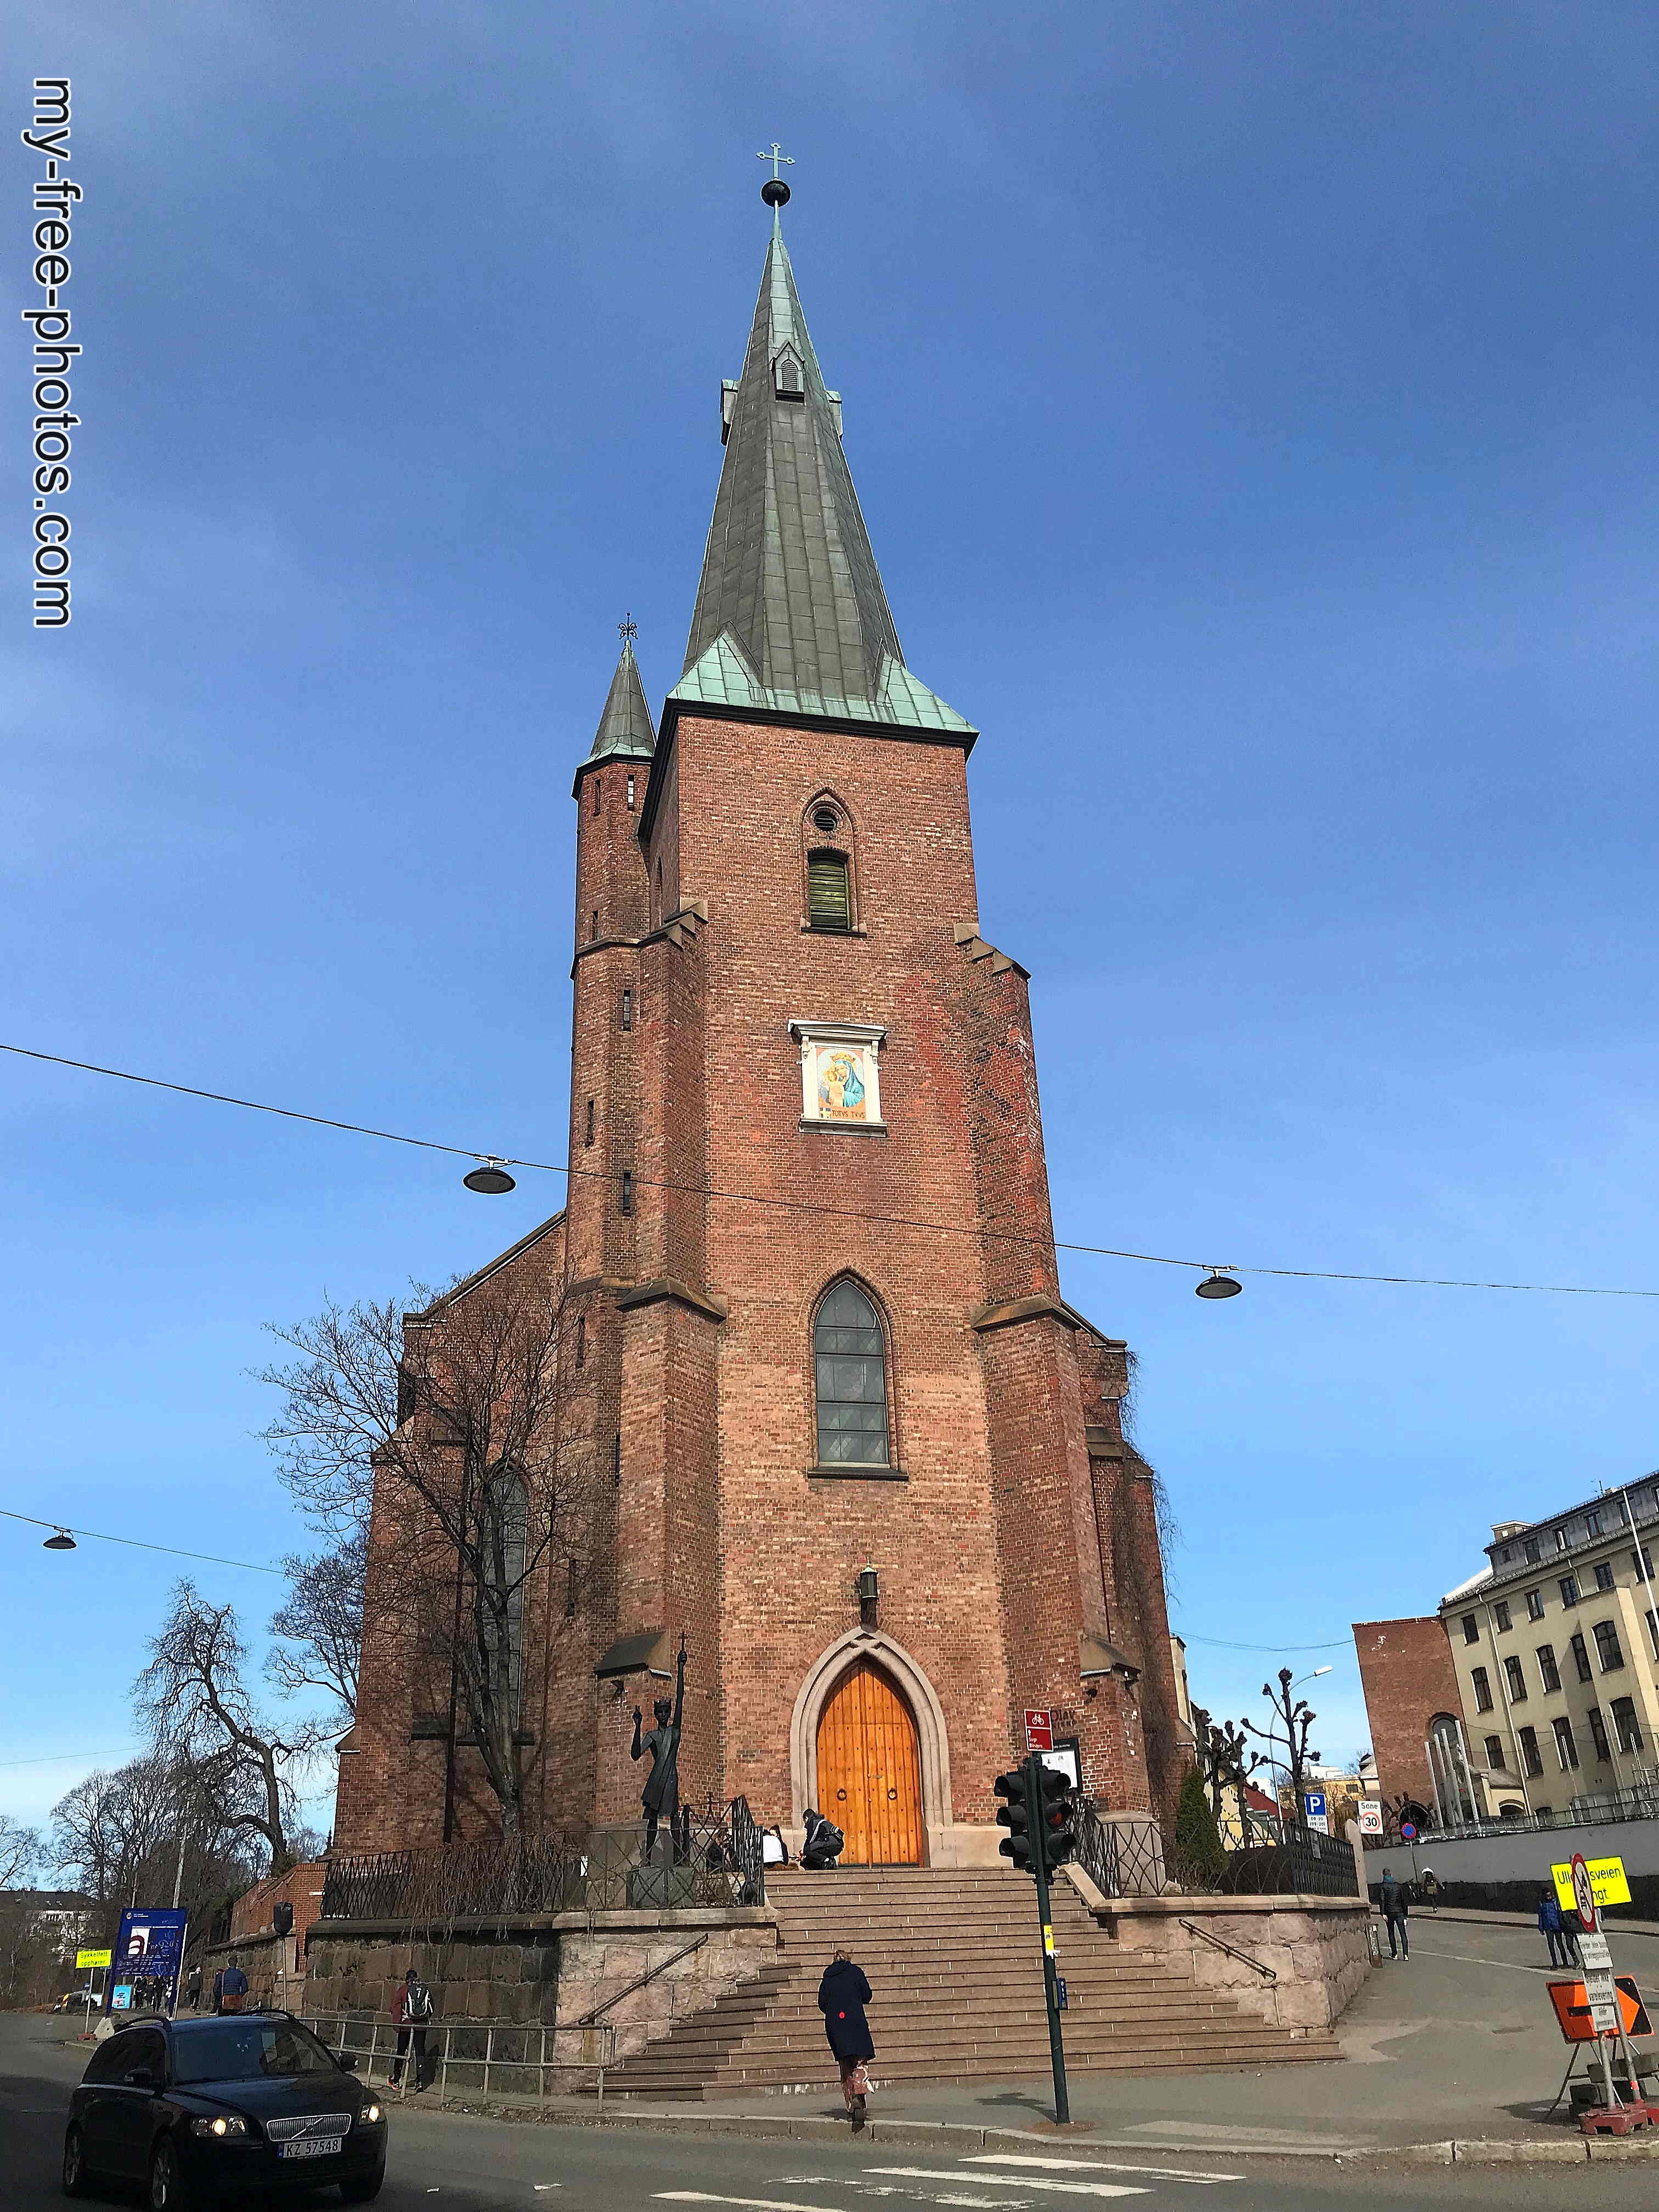 St. Olav's Catholic Church